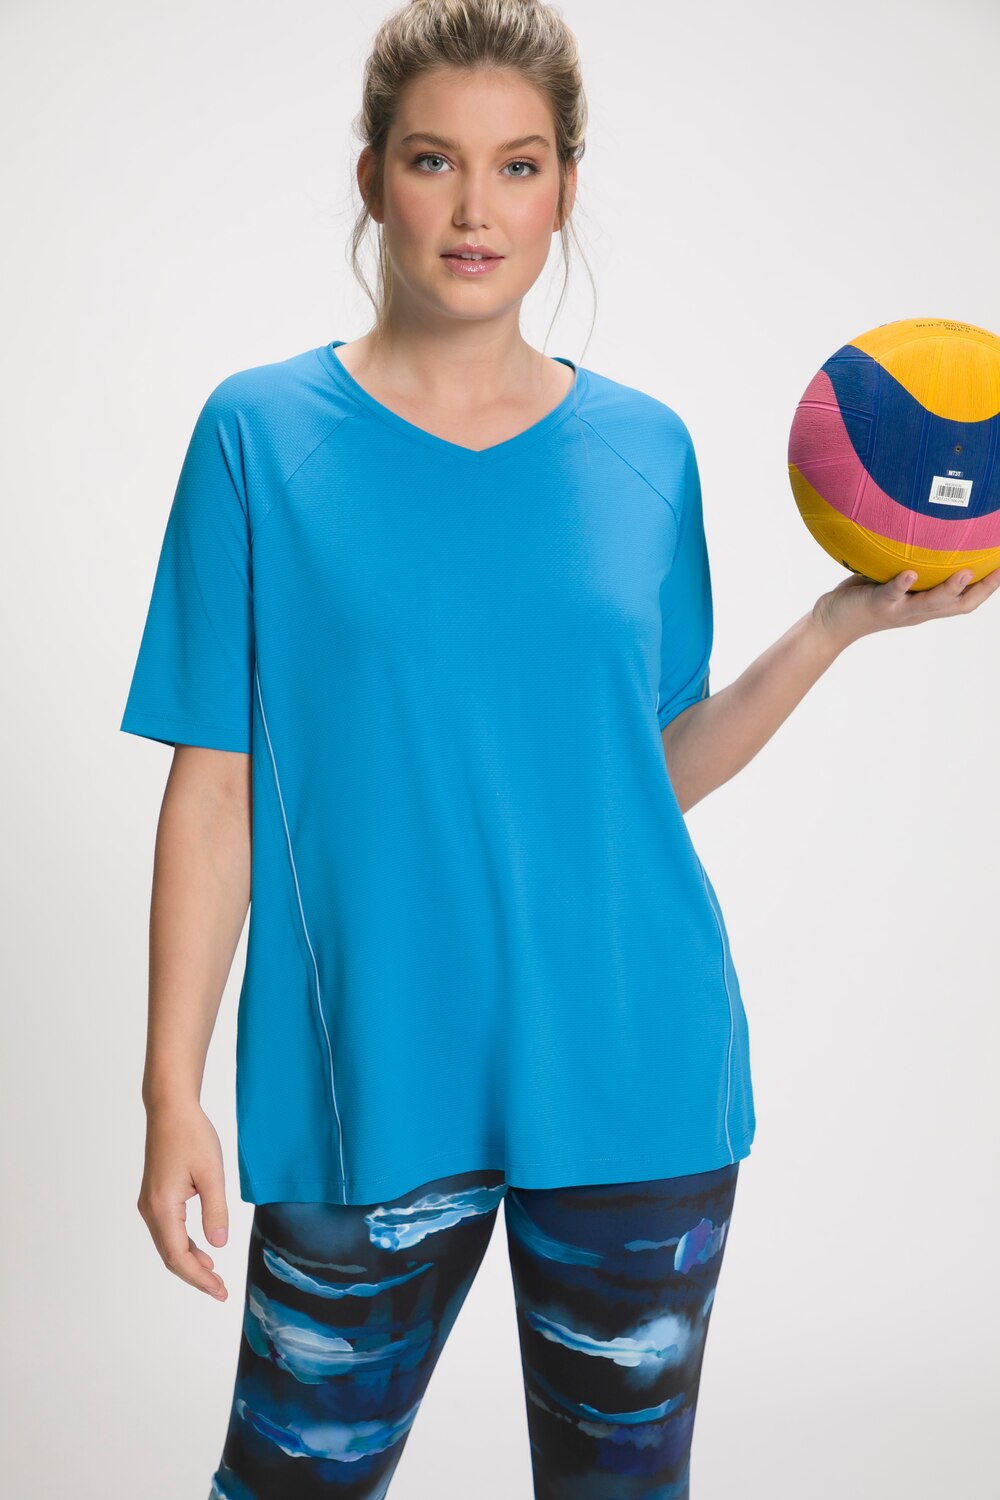 Grote Maten T-shirt, Dames, blauw, Maat: 46/48, Polyester/Elastaan, Ulla Popken